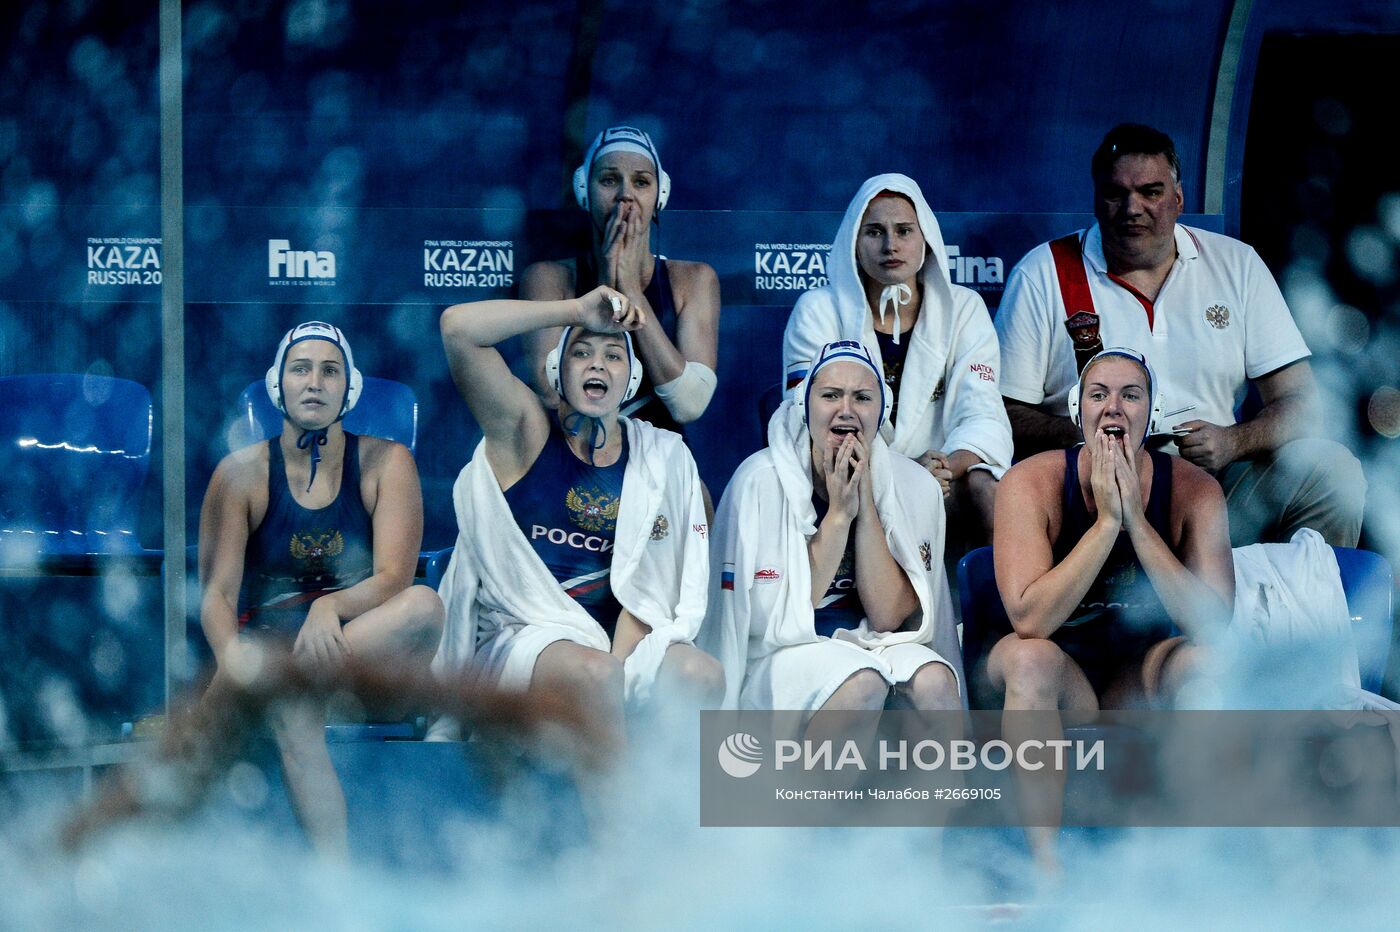 Чемпионат мира FINA 2015. Водное поло. Женщины. Матч Россия - Китай